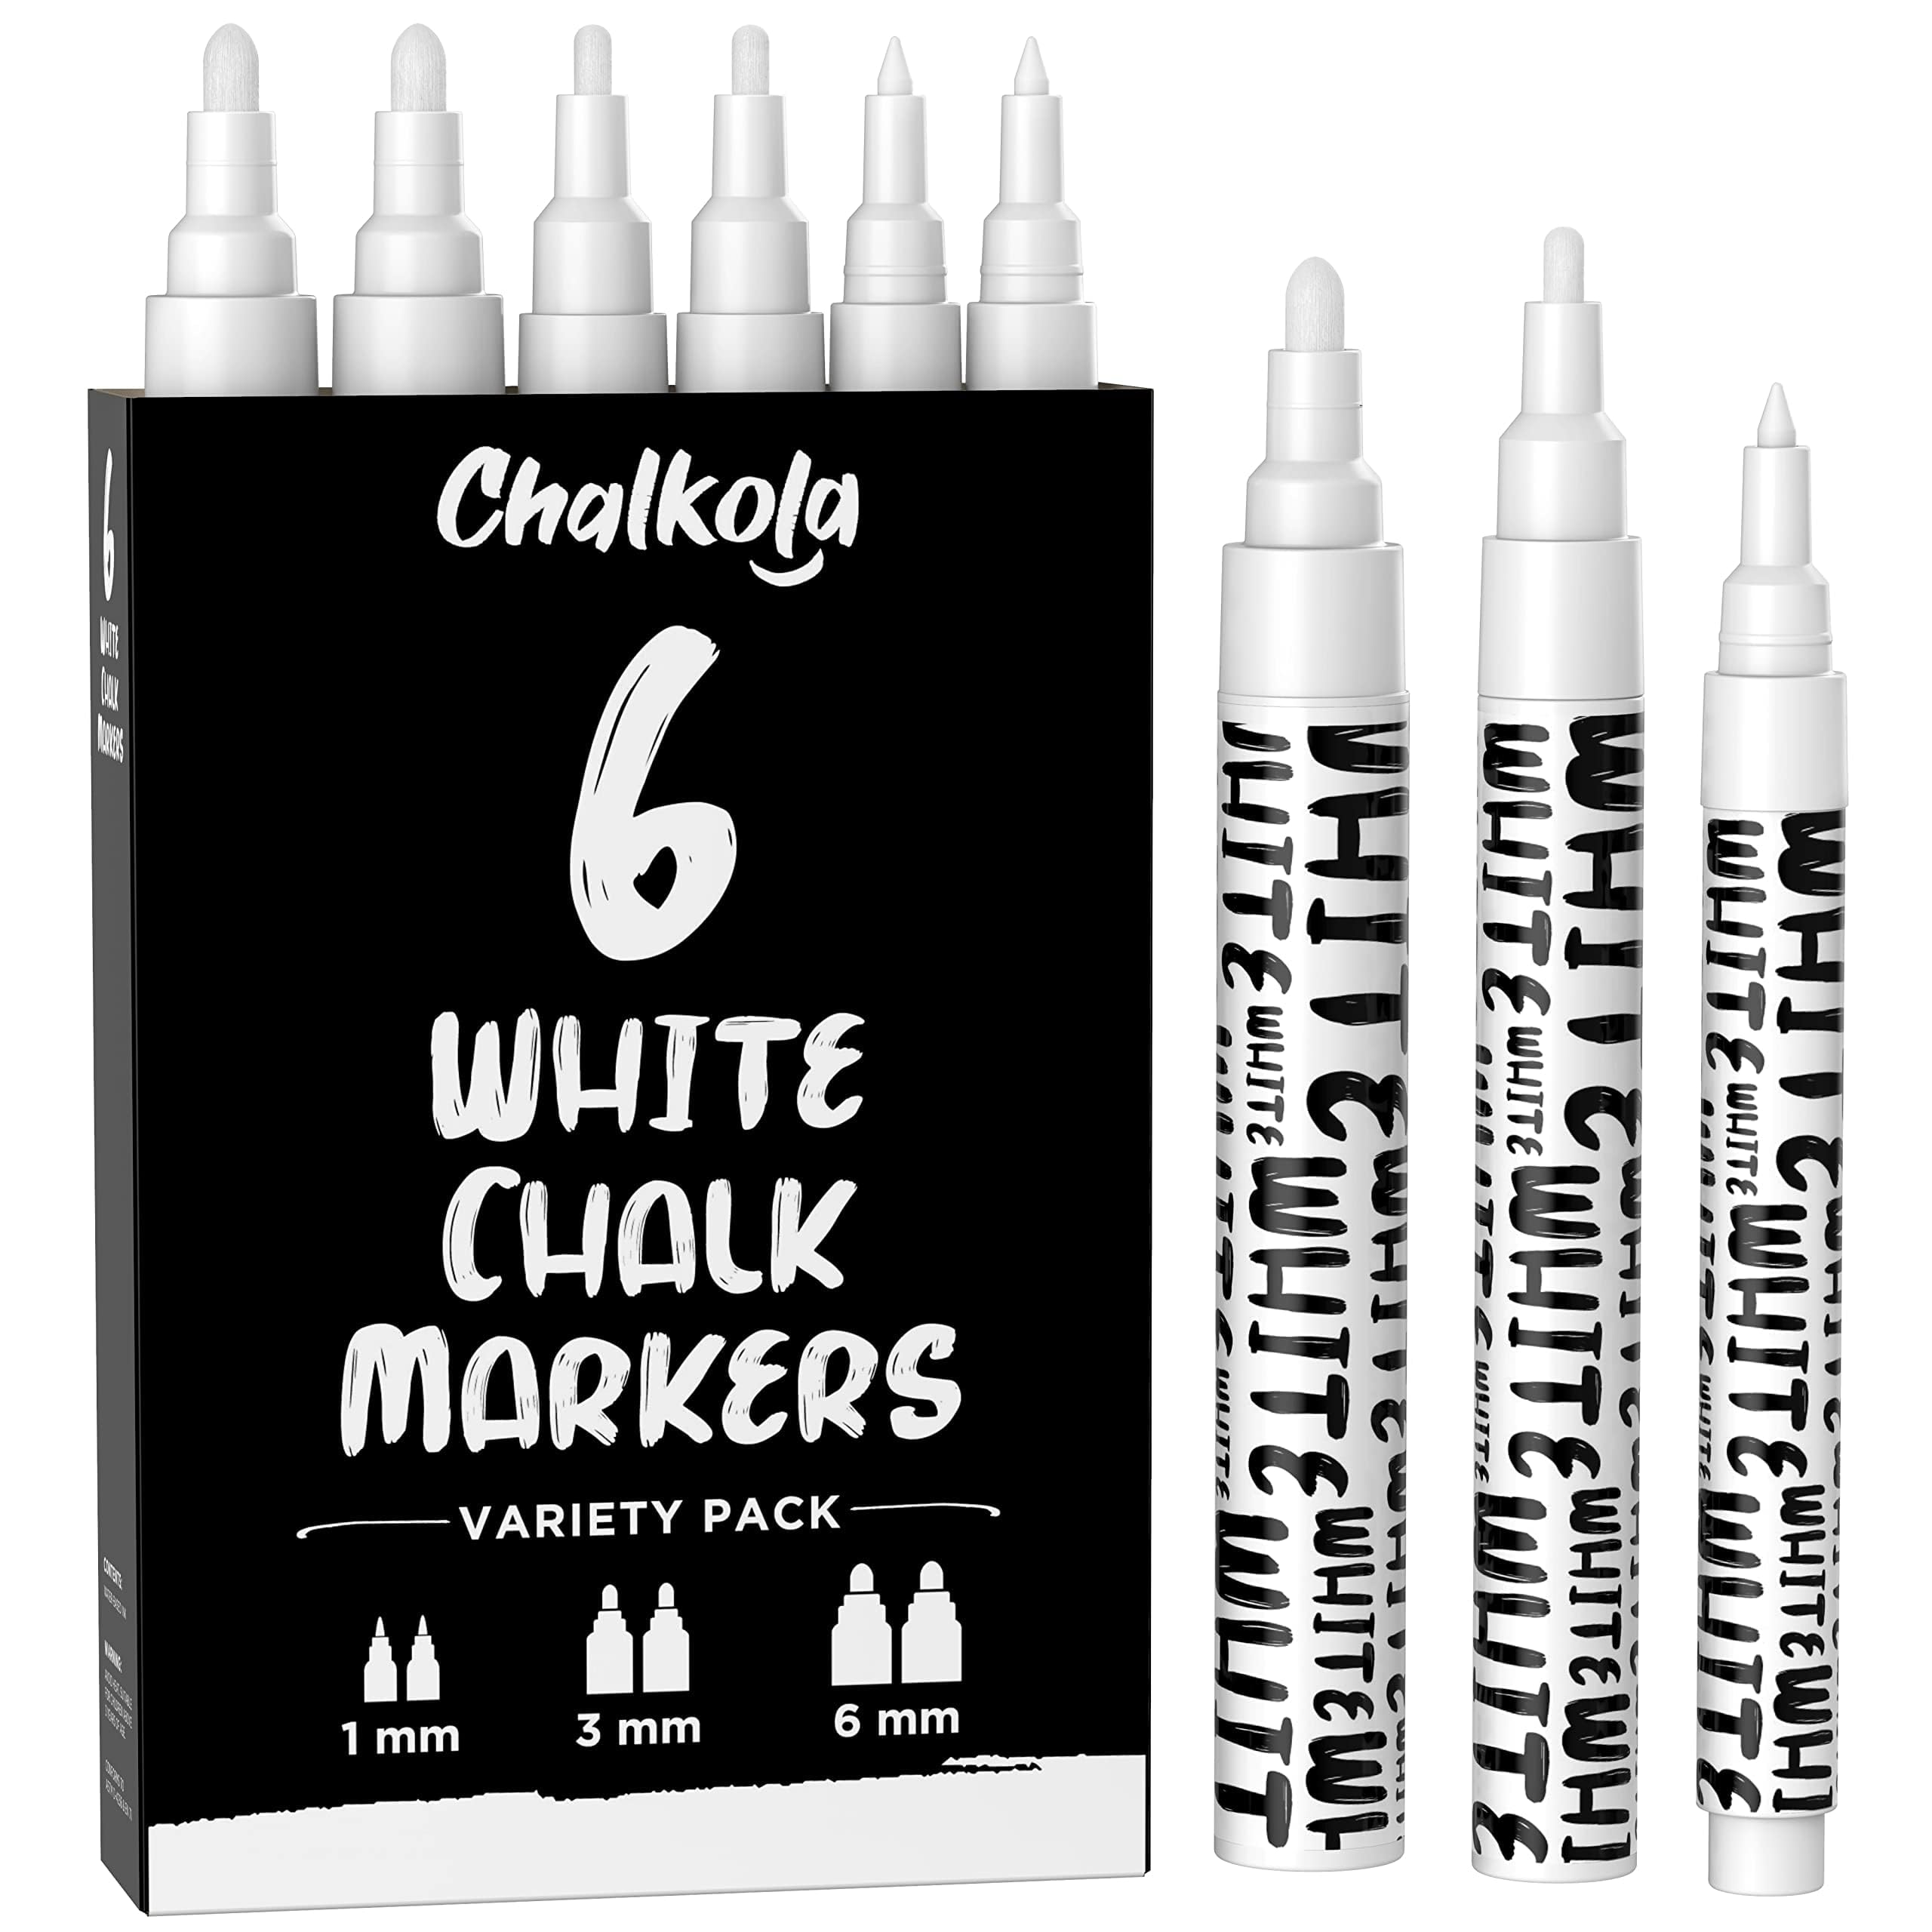 Chalkola chk_6white_variety chalkola White chalk Markers - White